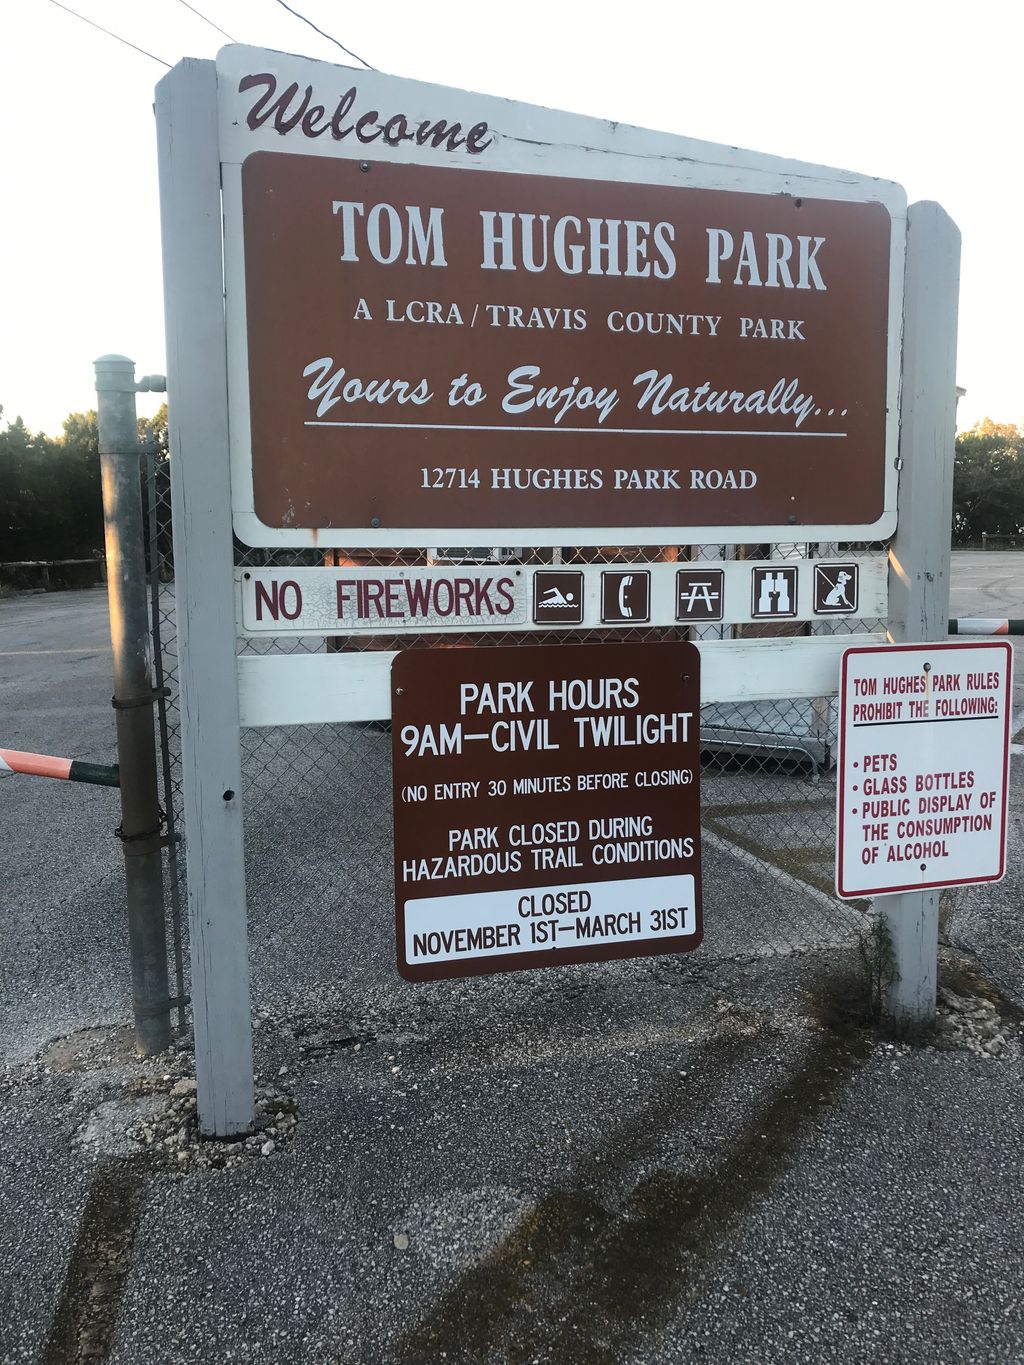 Tom Hughes Park